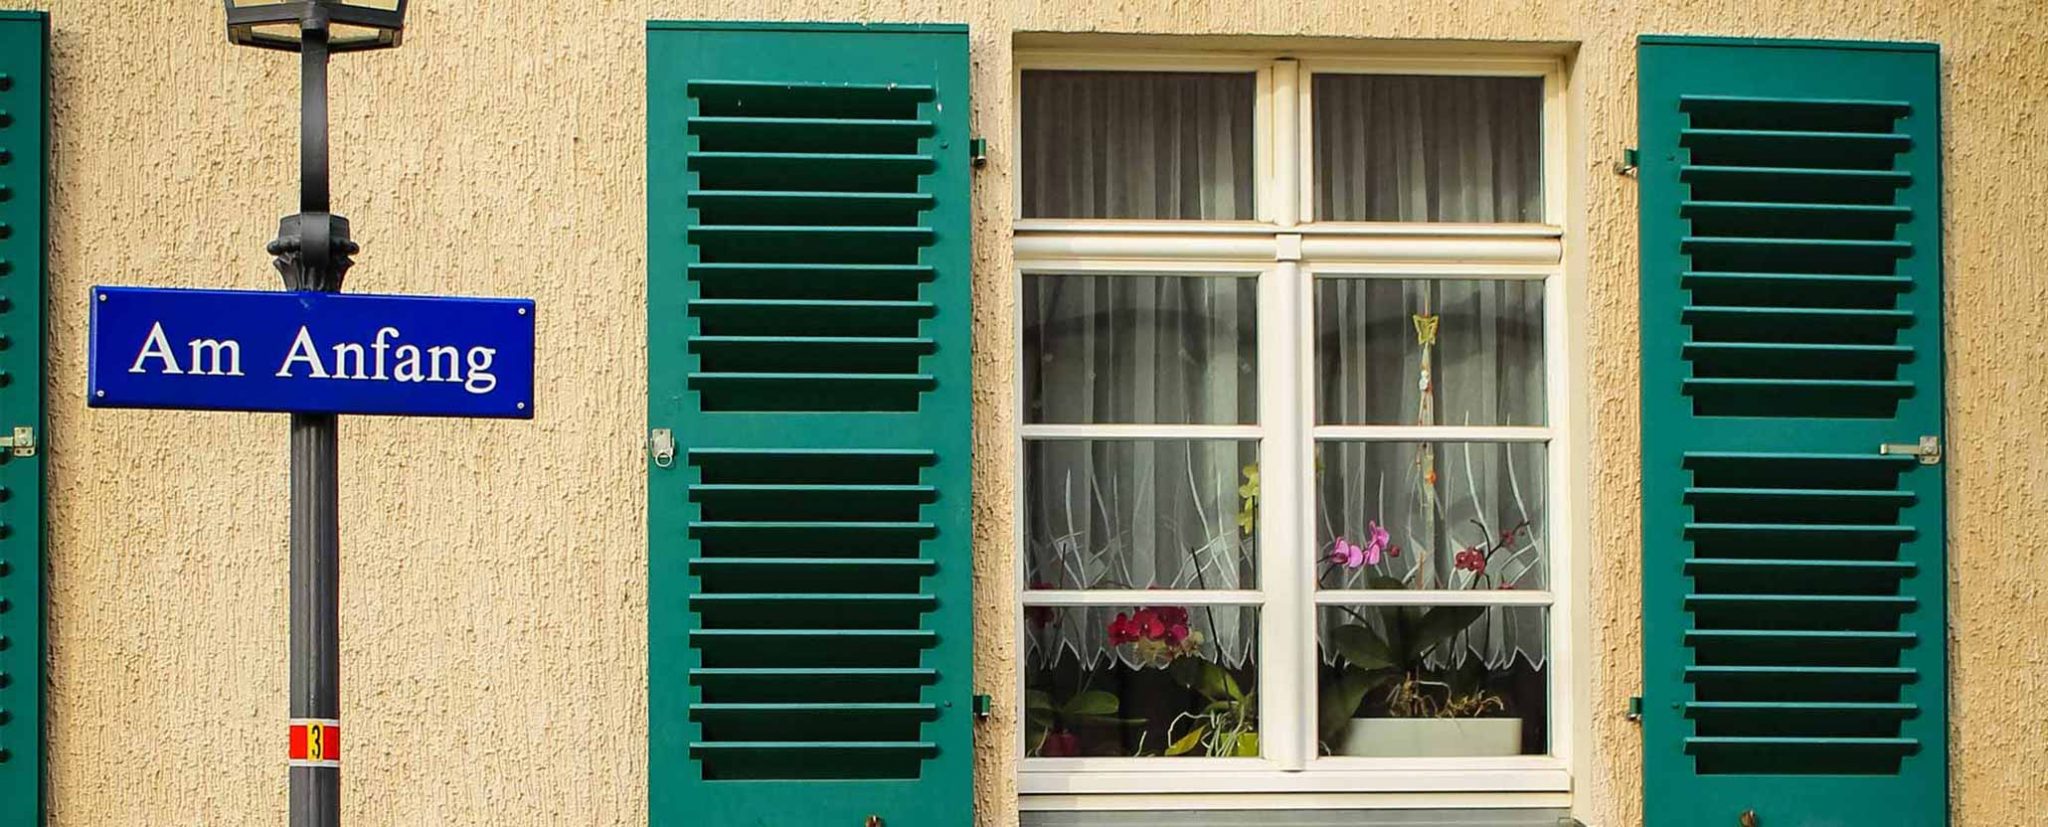 Eine Hausfassade mit grünen Fensterläden, davor ein Straßenschild mit der Aufschrift "Am Anfang"